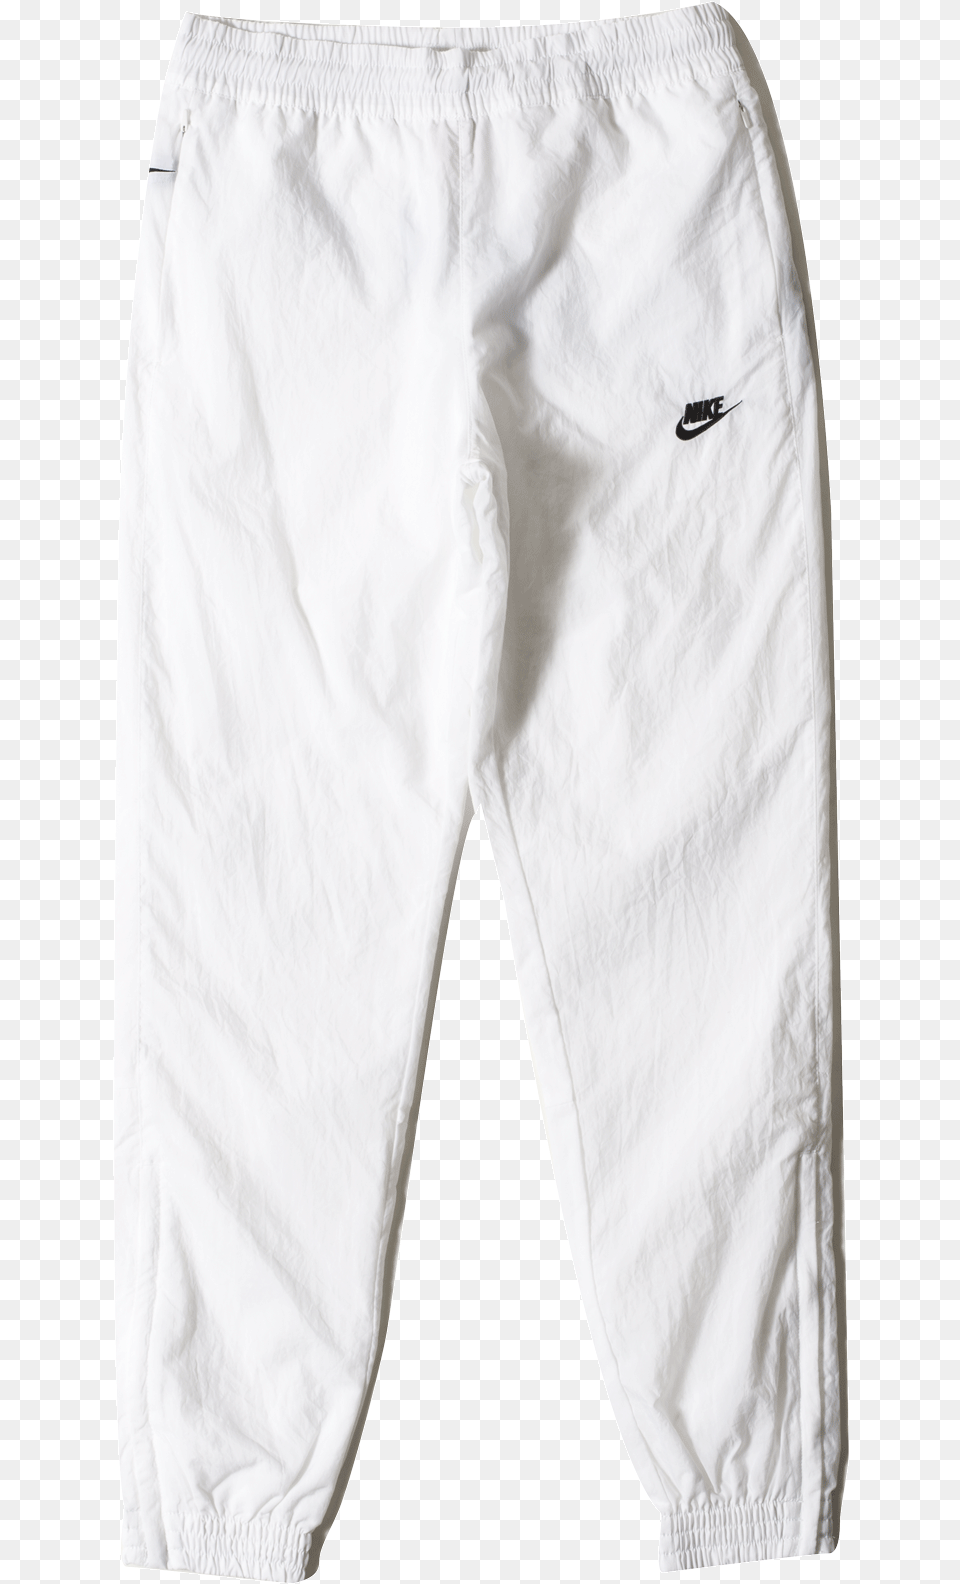 Swoosh Woven Pant Aj2300 100 Nike M Nsw Vw Swoosh Woven Pant, Clothing, Shorts, Pants, Coat Free Transparent Png